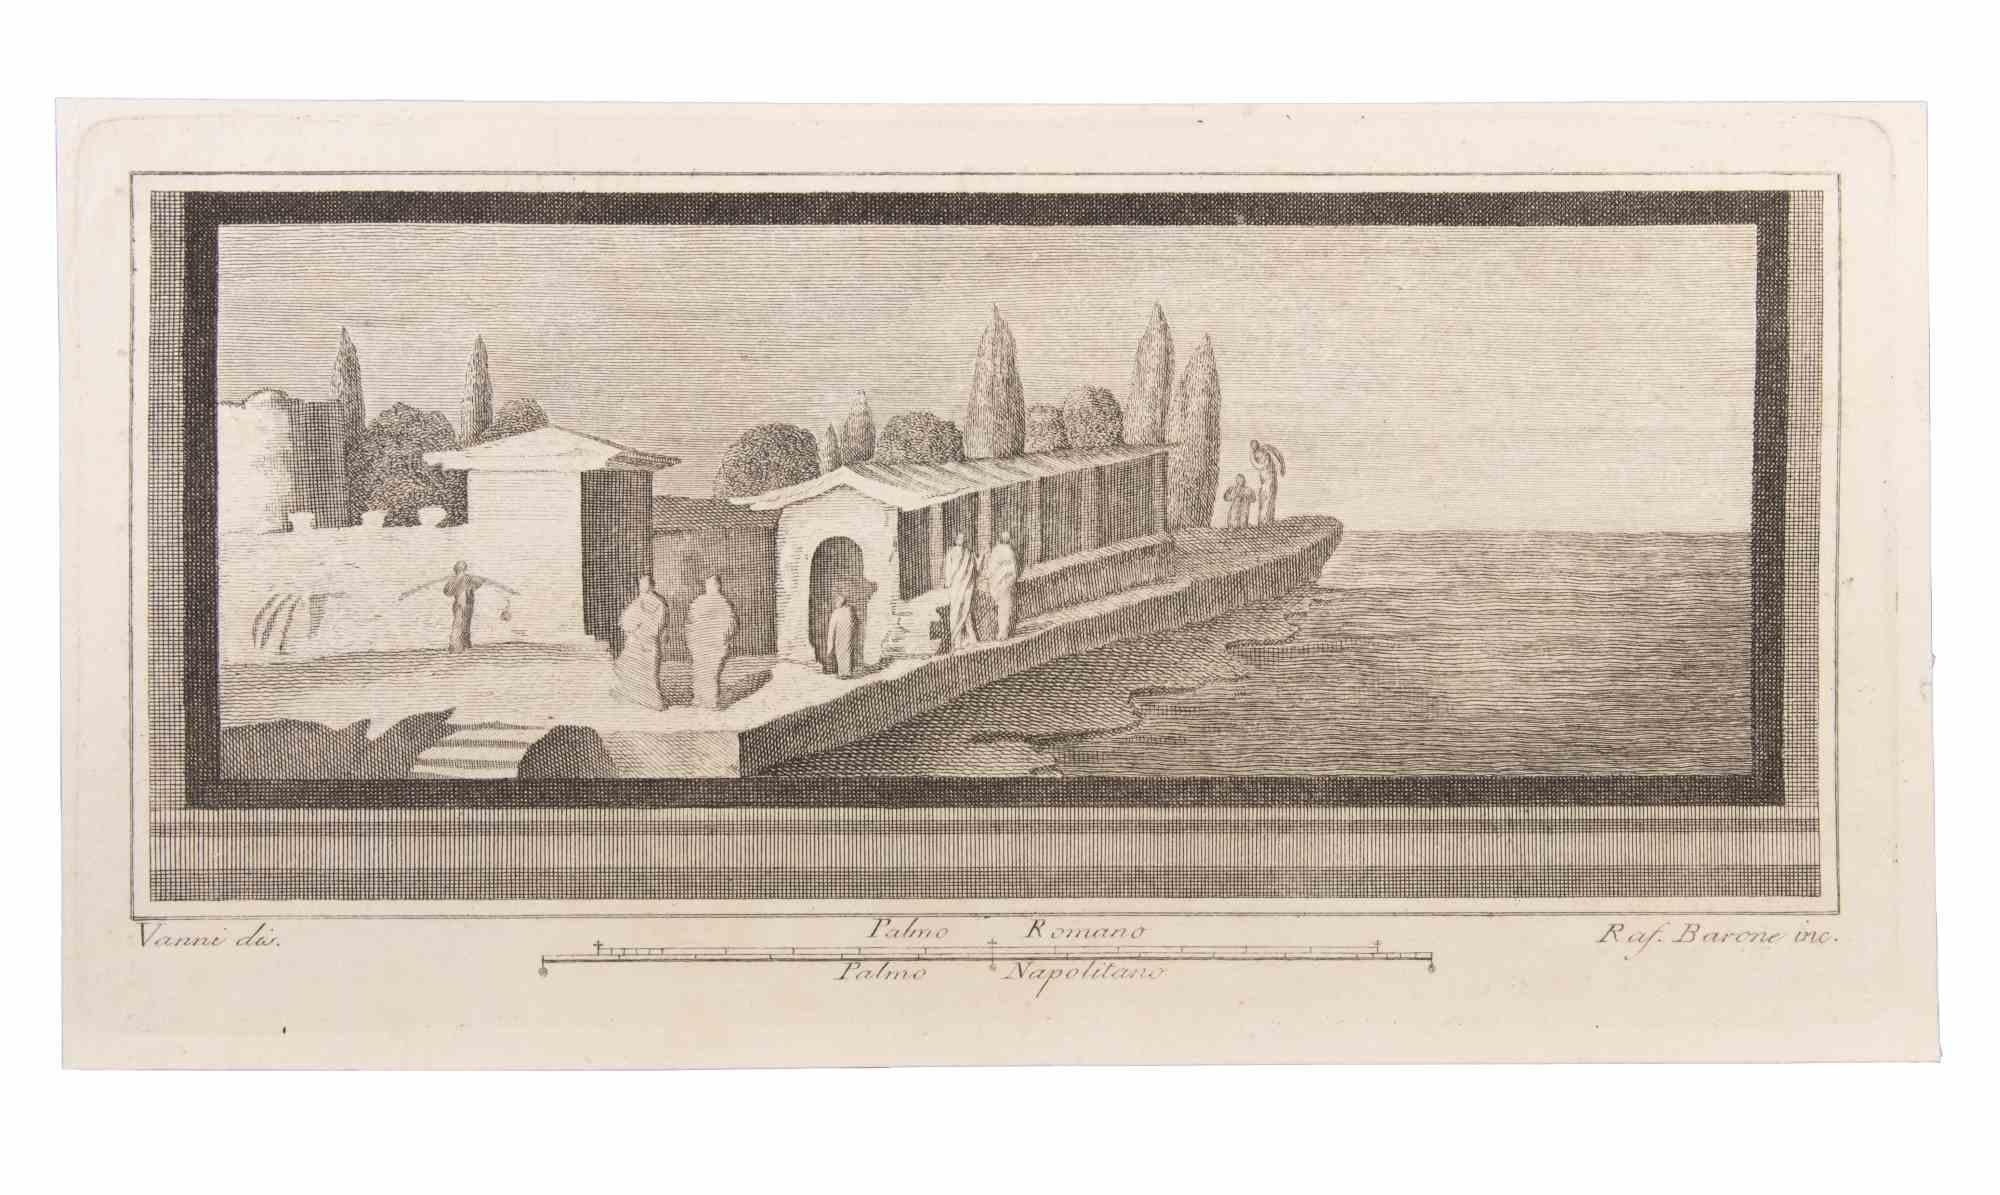 Seascape With Monument and Figures est une eau-forte réalisée par Raffaele Barone (18ème siècle).

La gravure appartient à la suite d'estampes "Antiquités d'Herculanum exposées" (titre original : "Le Antichità di Ercolano Esposte"), un volume de